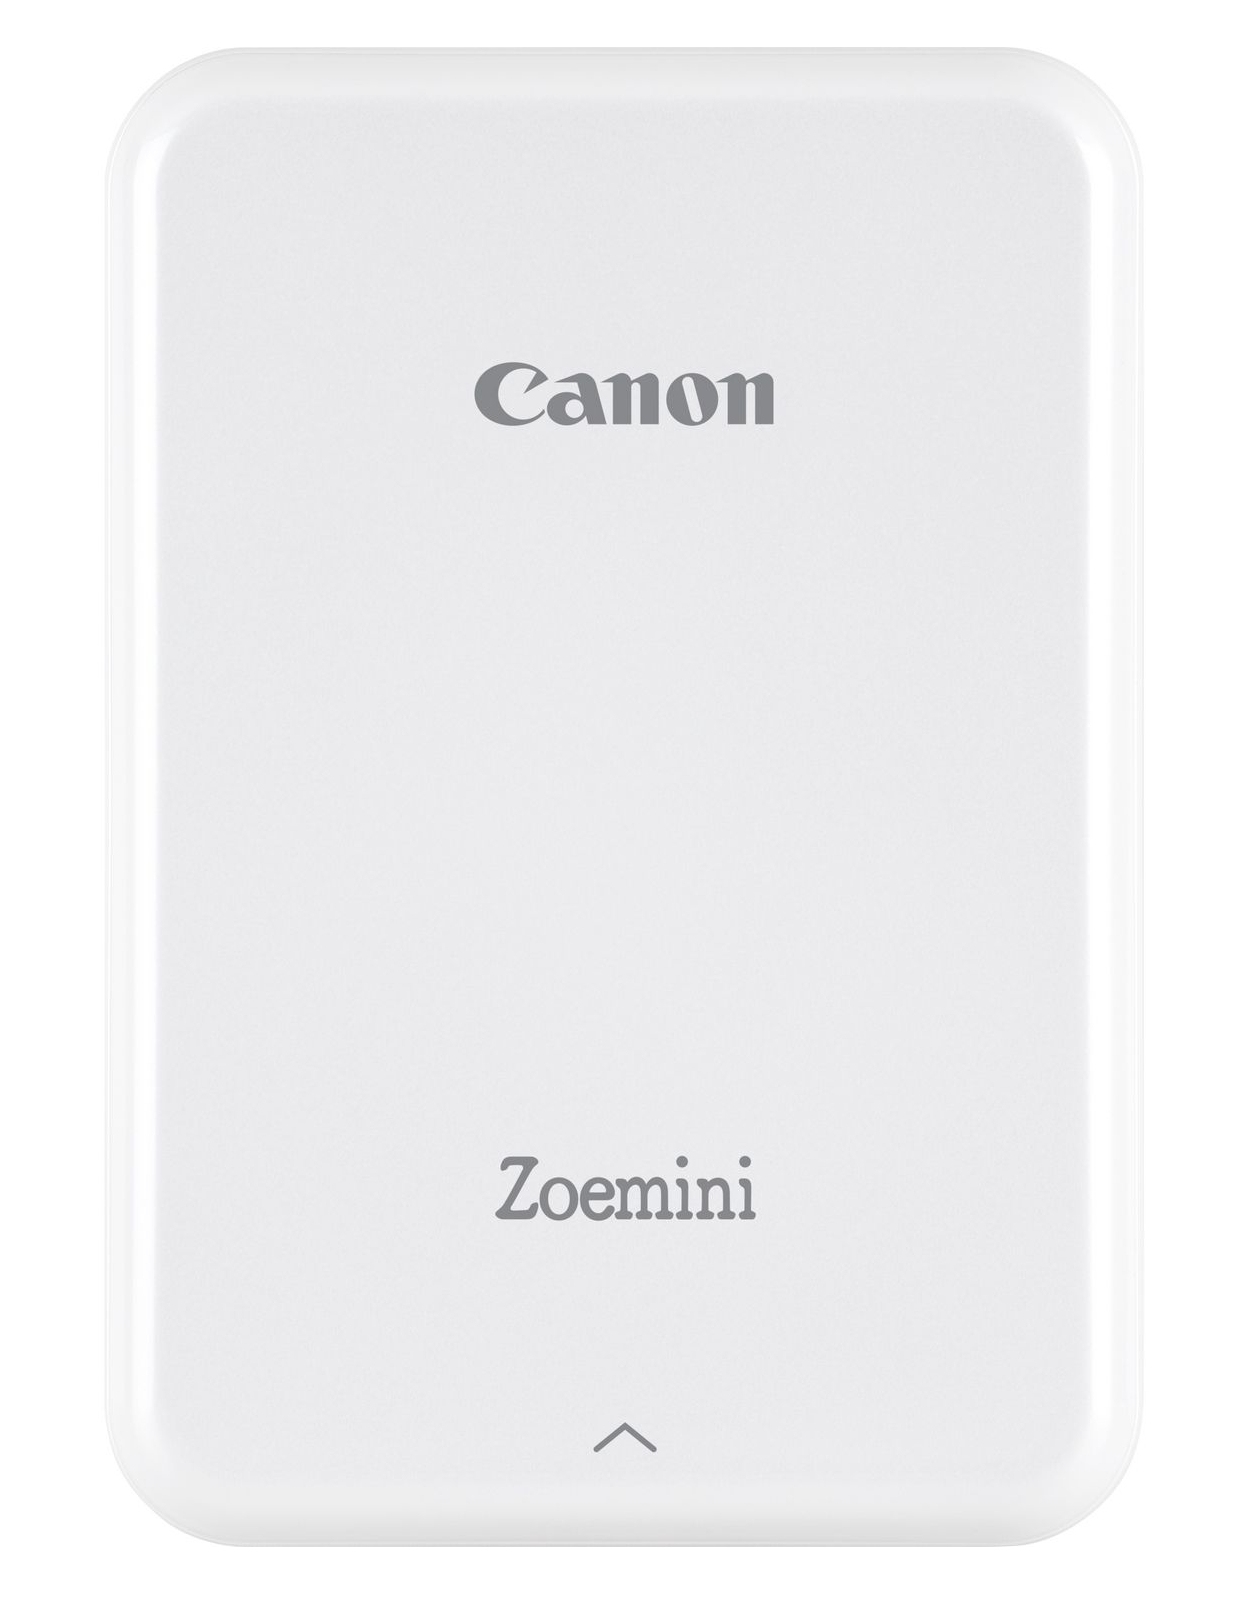 Canon Stampante fotografica portatile Zoemini, bianca [3204C006]